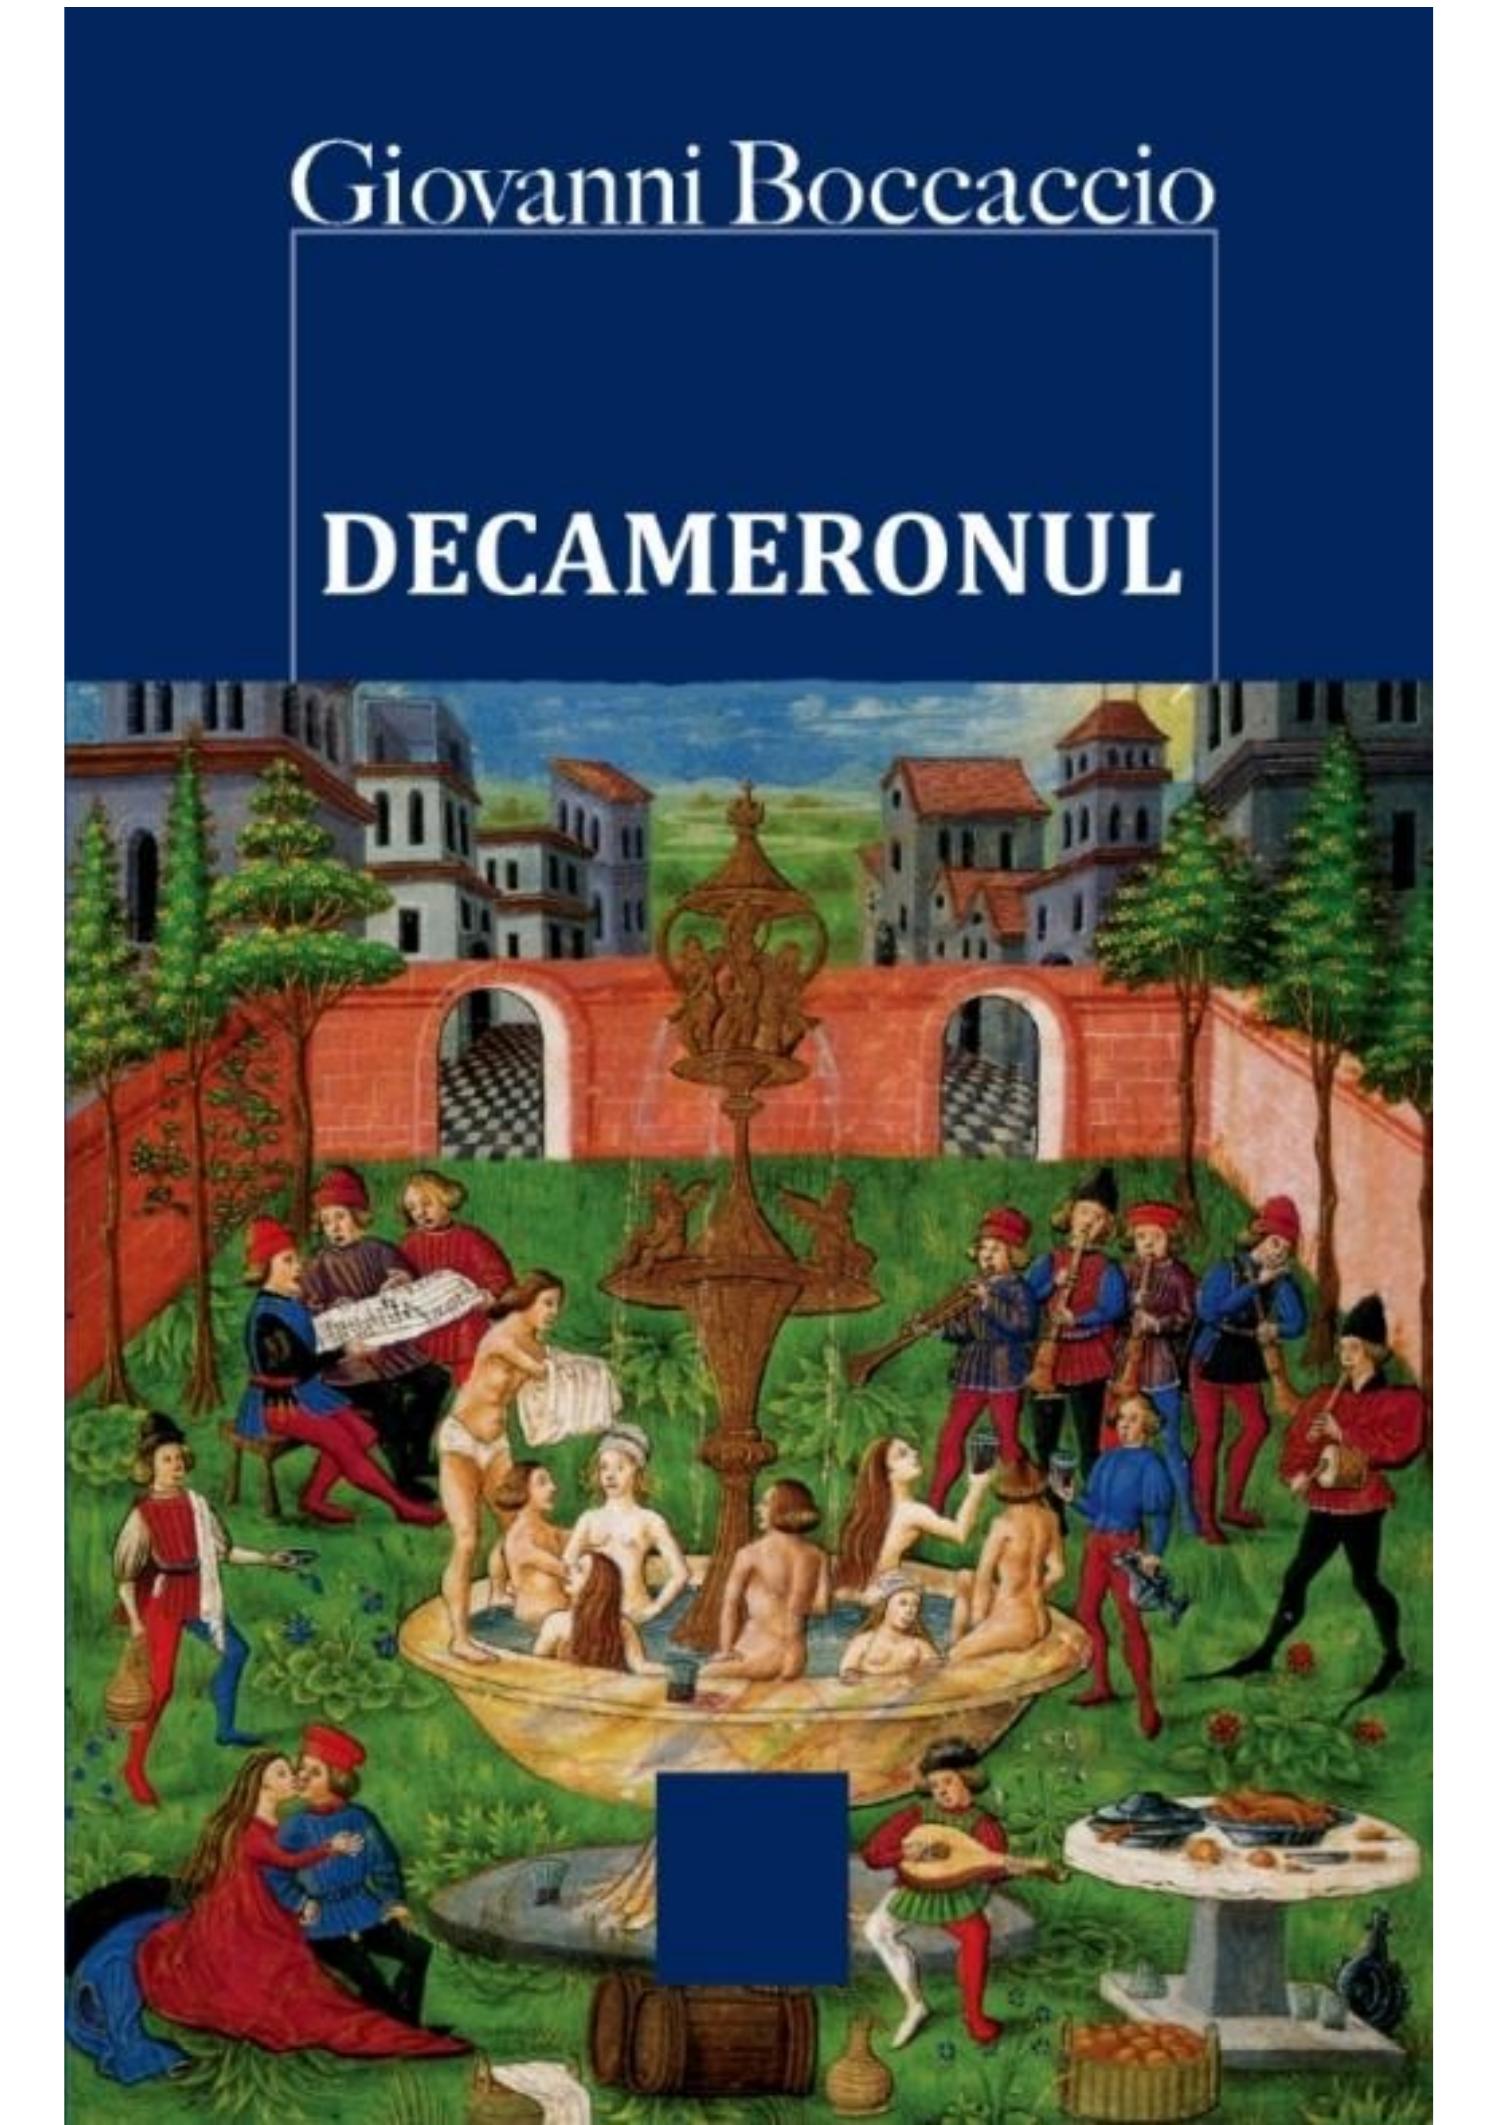 All kinds of enclosure cancer Boccaccio-Giovanni-Decameronul.pdf | DocDroid